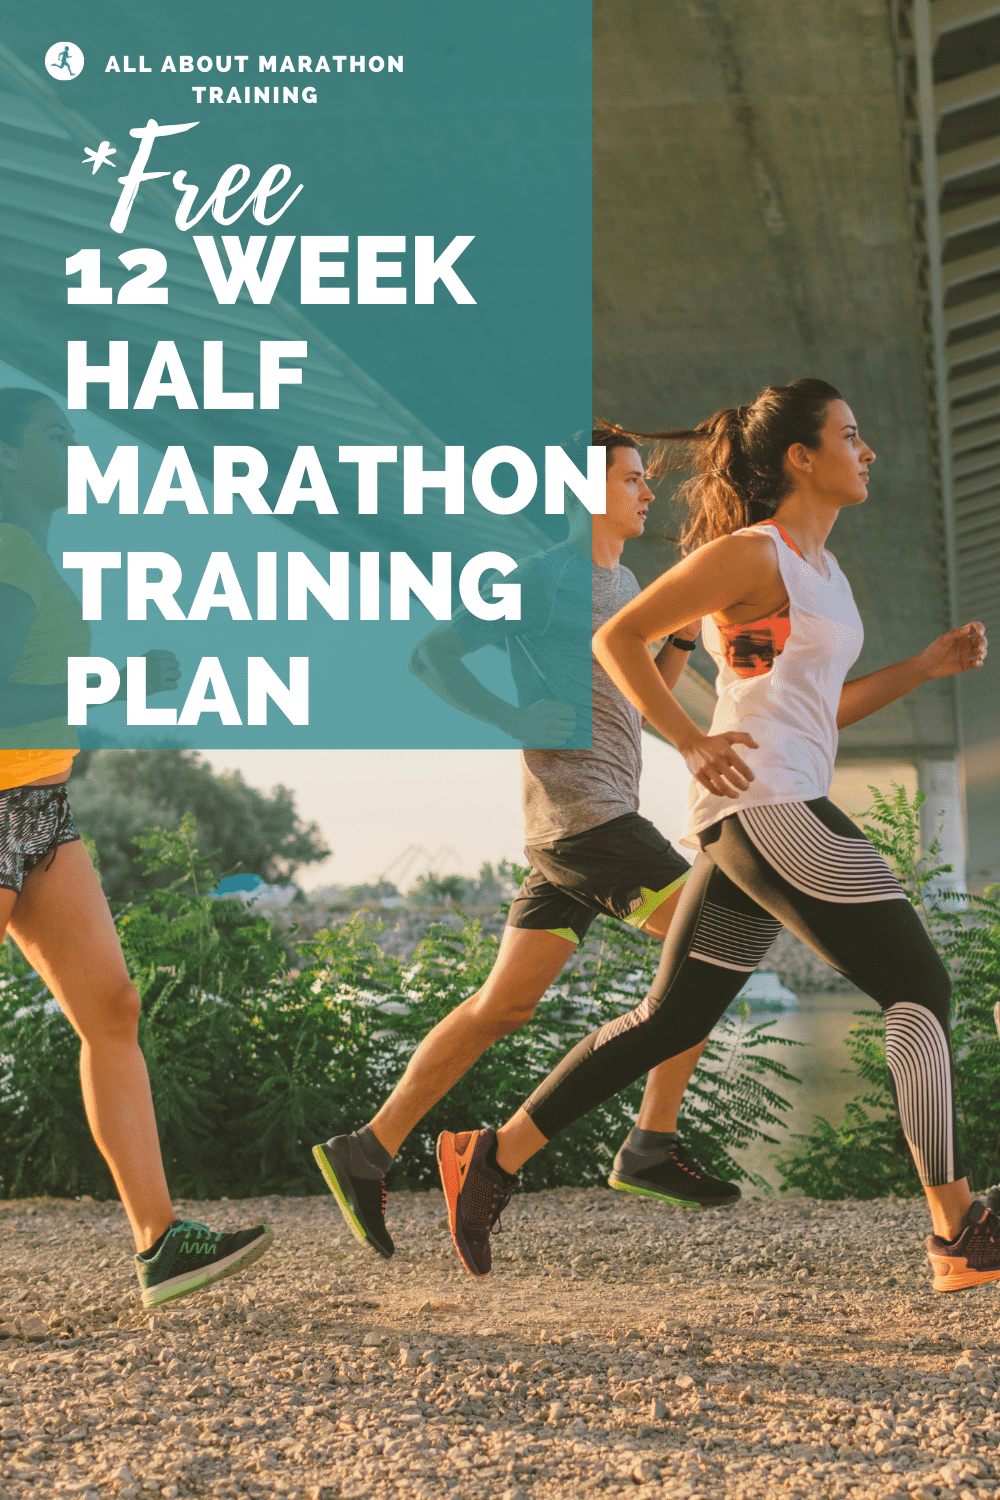 12 Week Half Marathon Training Schedule